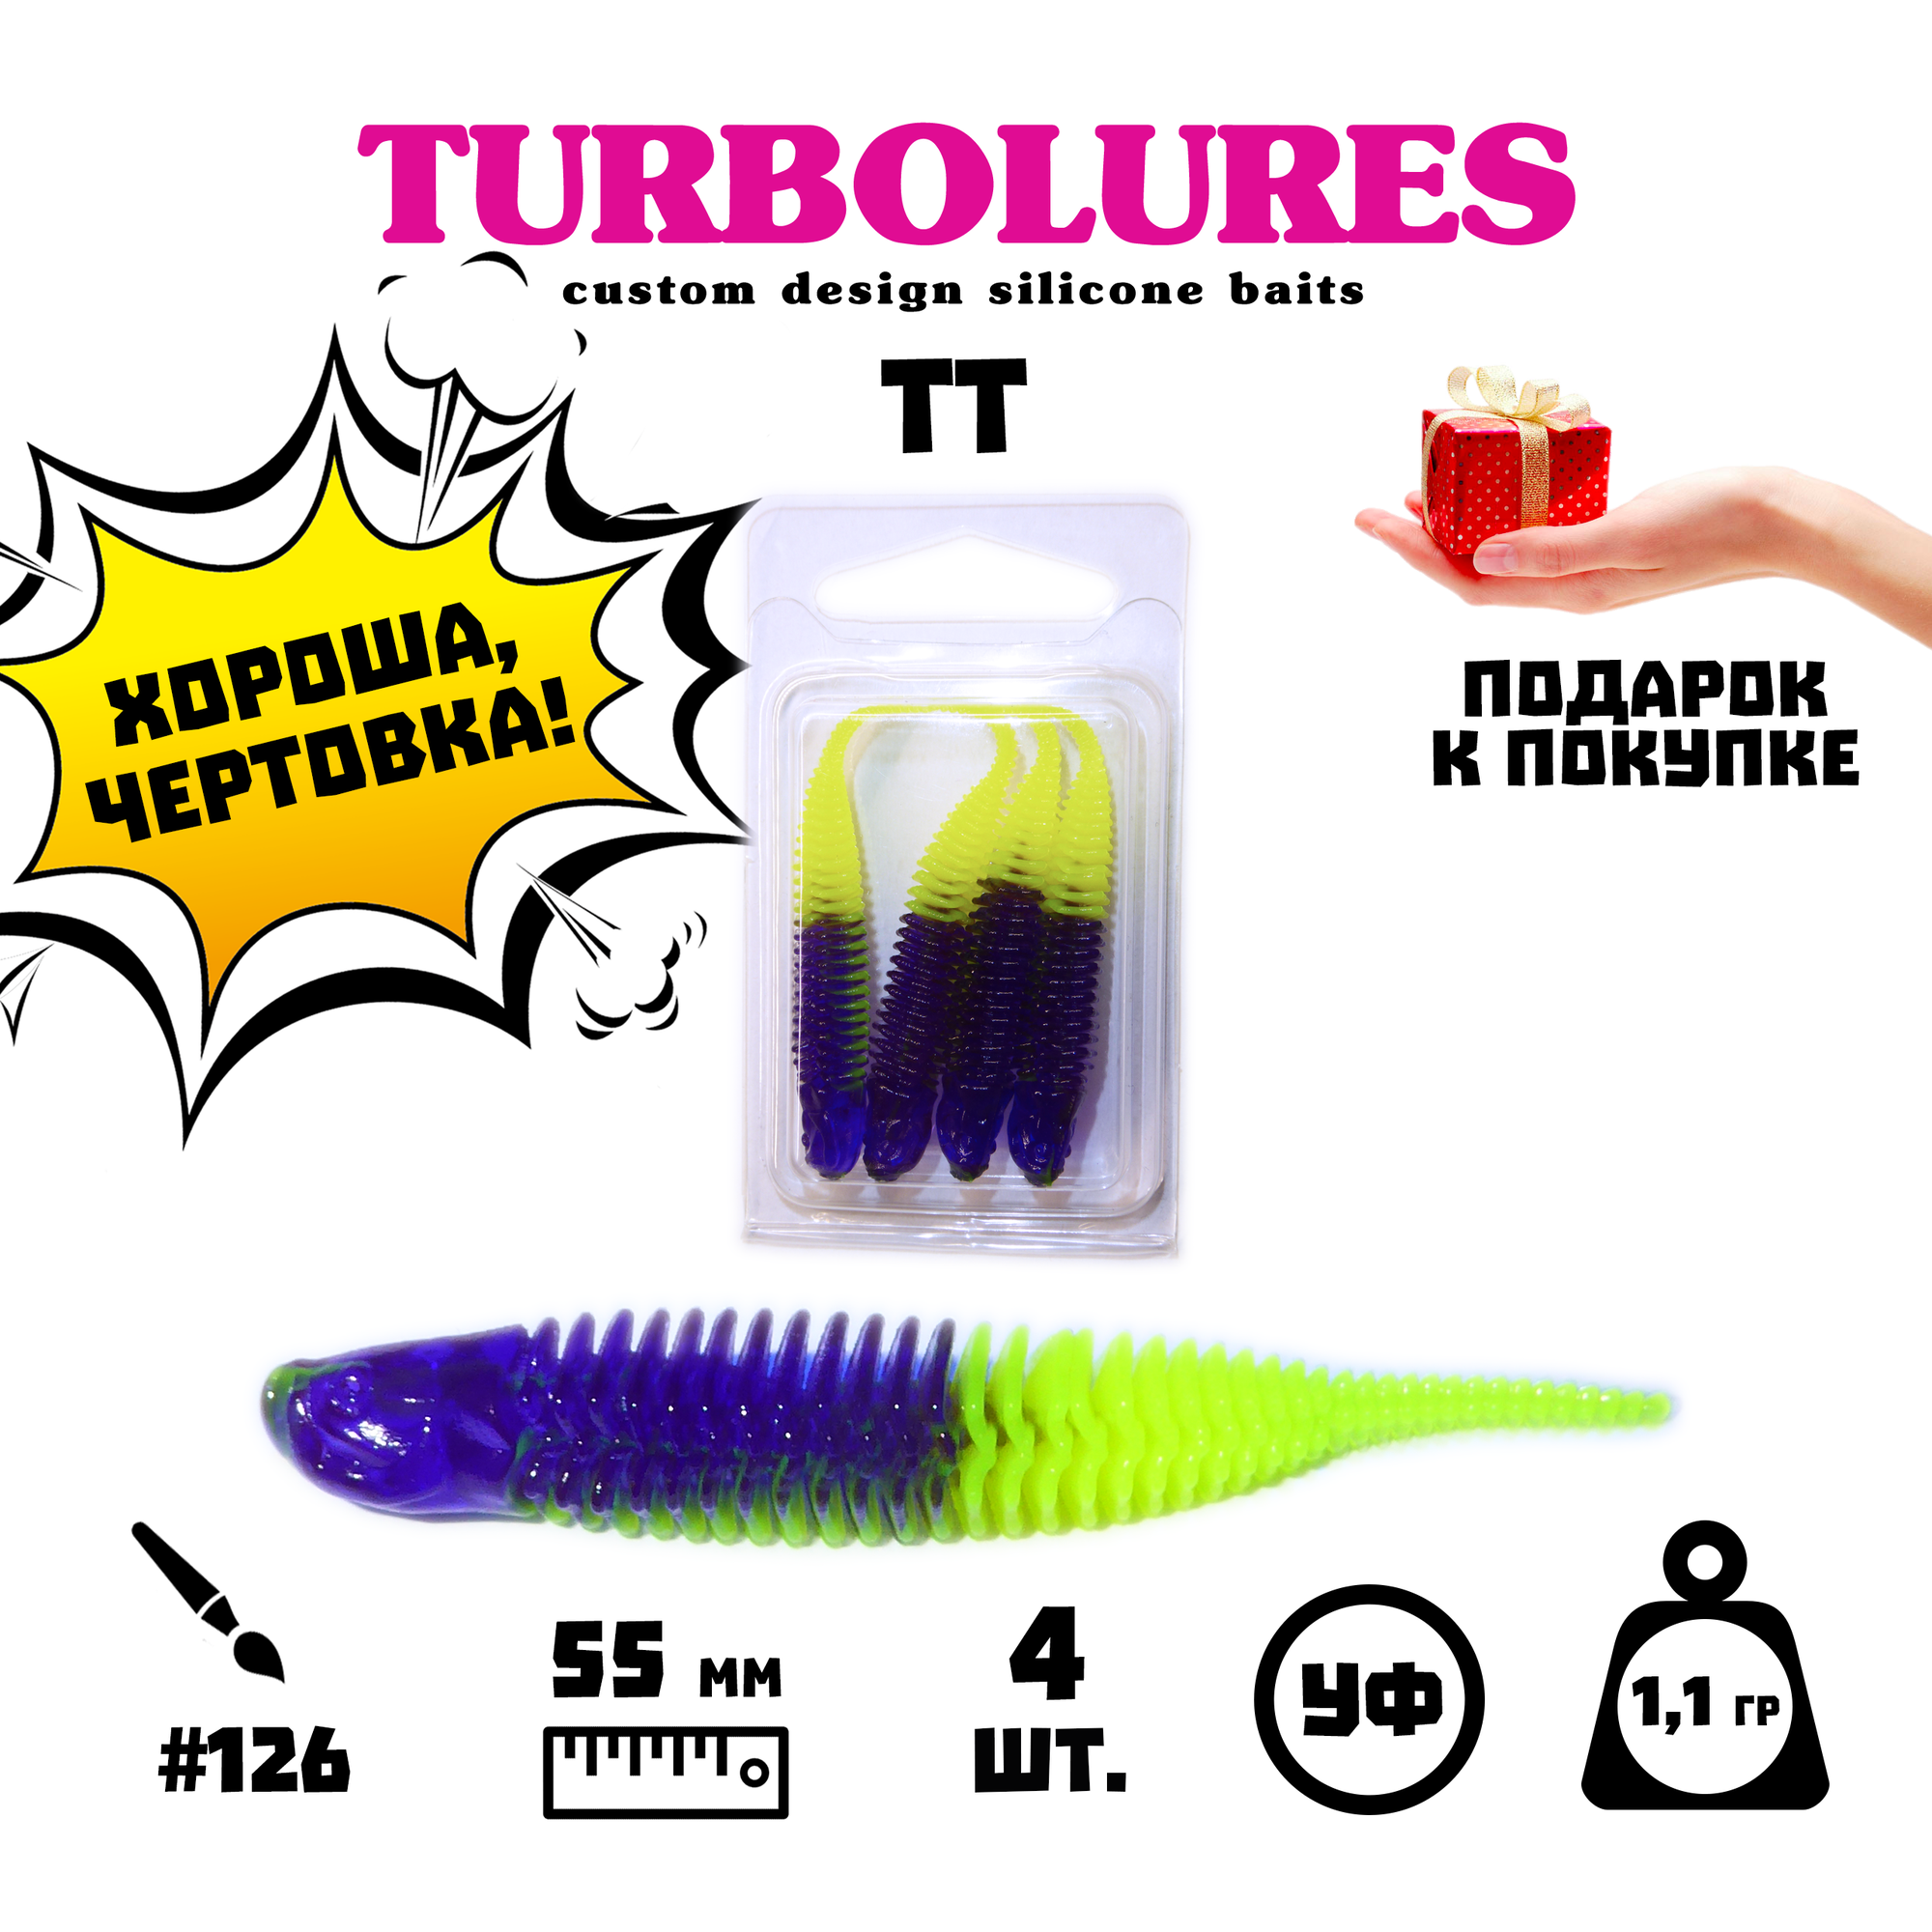 Мягкая приманка / силиконовая приманка / рыболовный набор / Turbolures Турболюрес / TT #126 55 мм 1,1 гр слаг 4 шт.